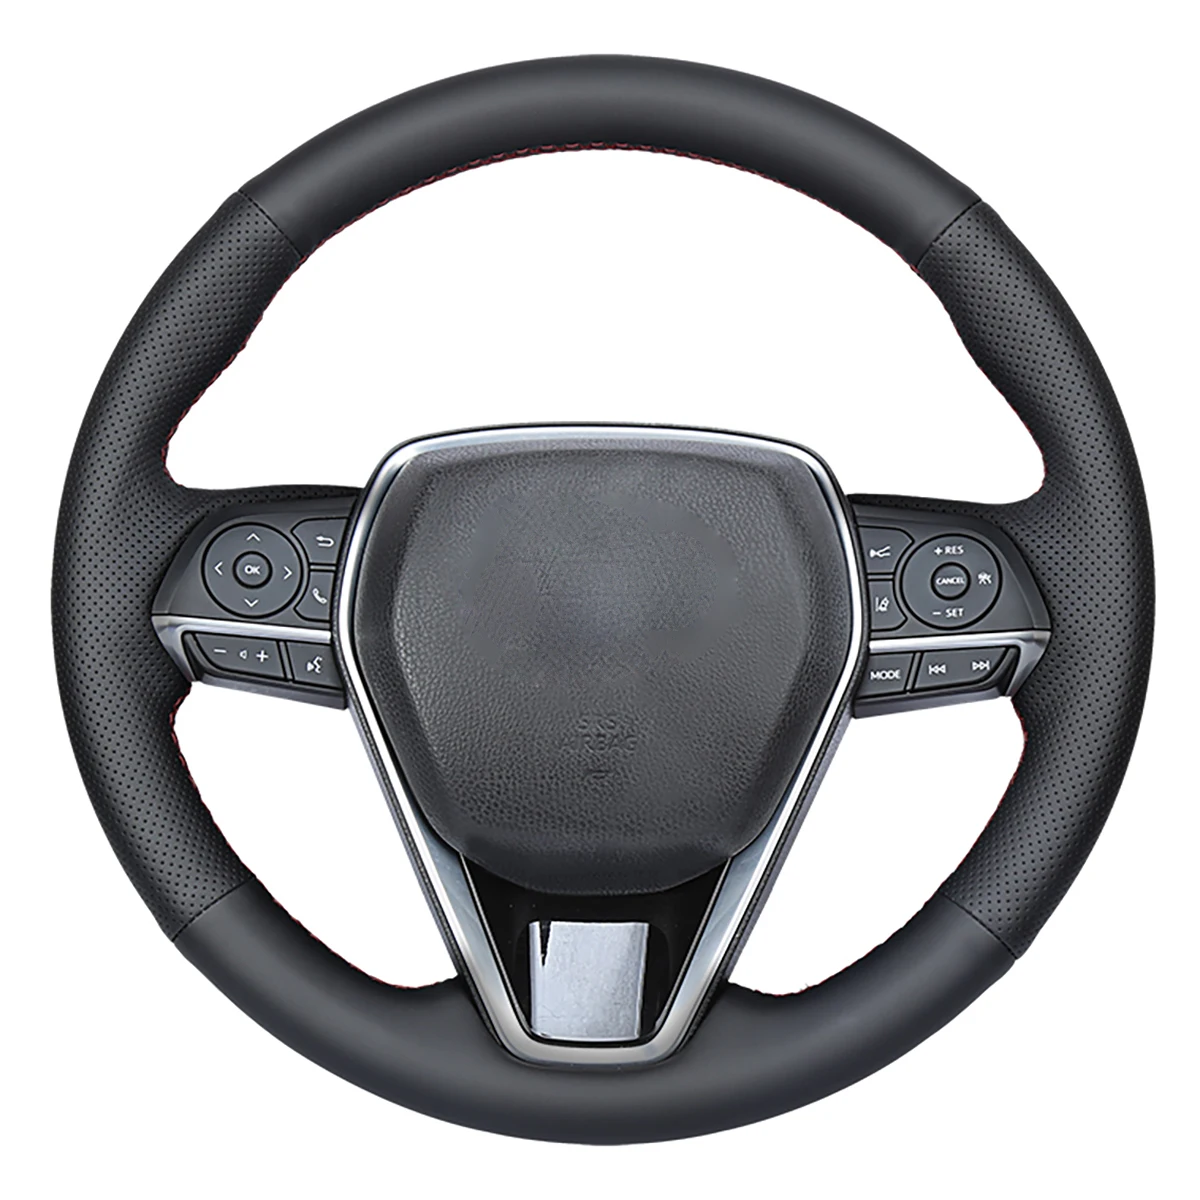 يوجي هونغ مخيط يدويا غطاء عجلة قيادة السيارة لتويوتا كورولا RAV4 كامري أفالون 2018-2020 الكانتارا/حقيقي/الألياف الدقيقة